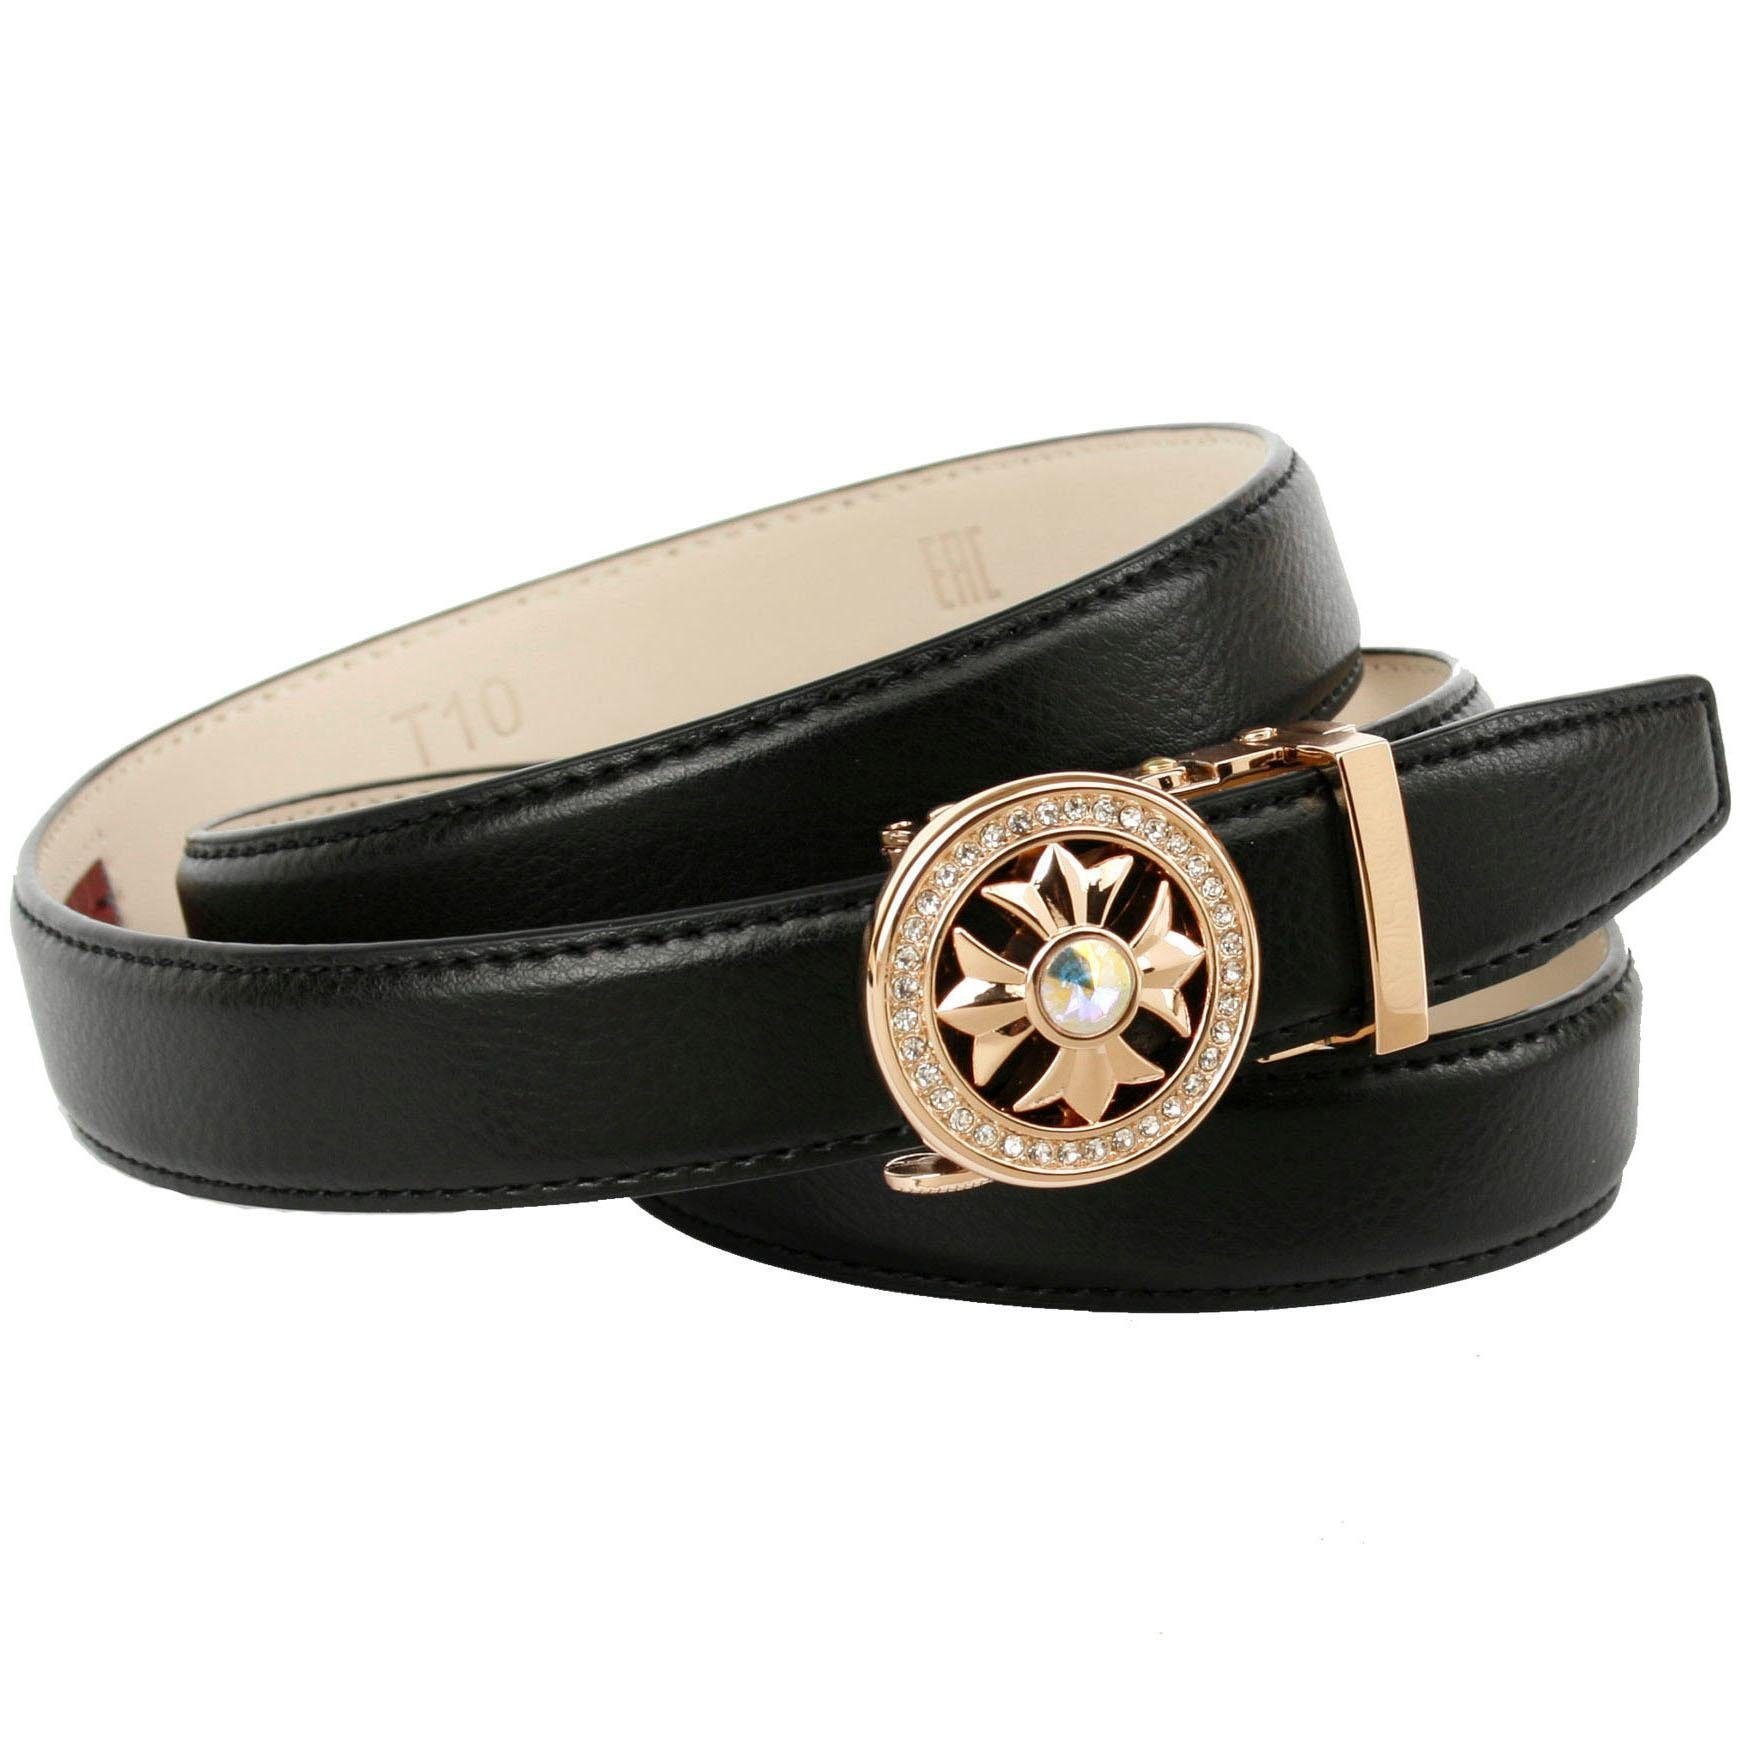 Anthoni Crown Ledergürtel, in schmaler Form, runde Schließe bequem  bestellen